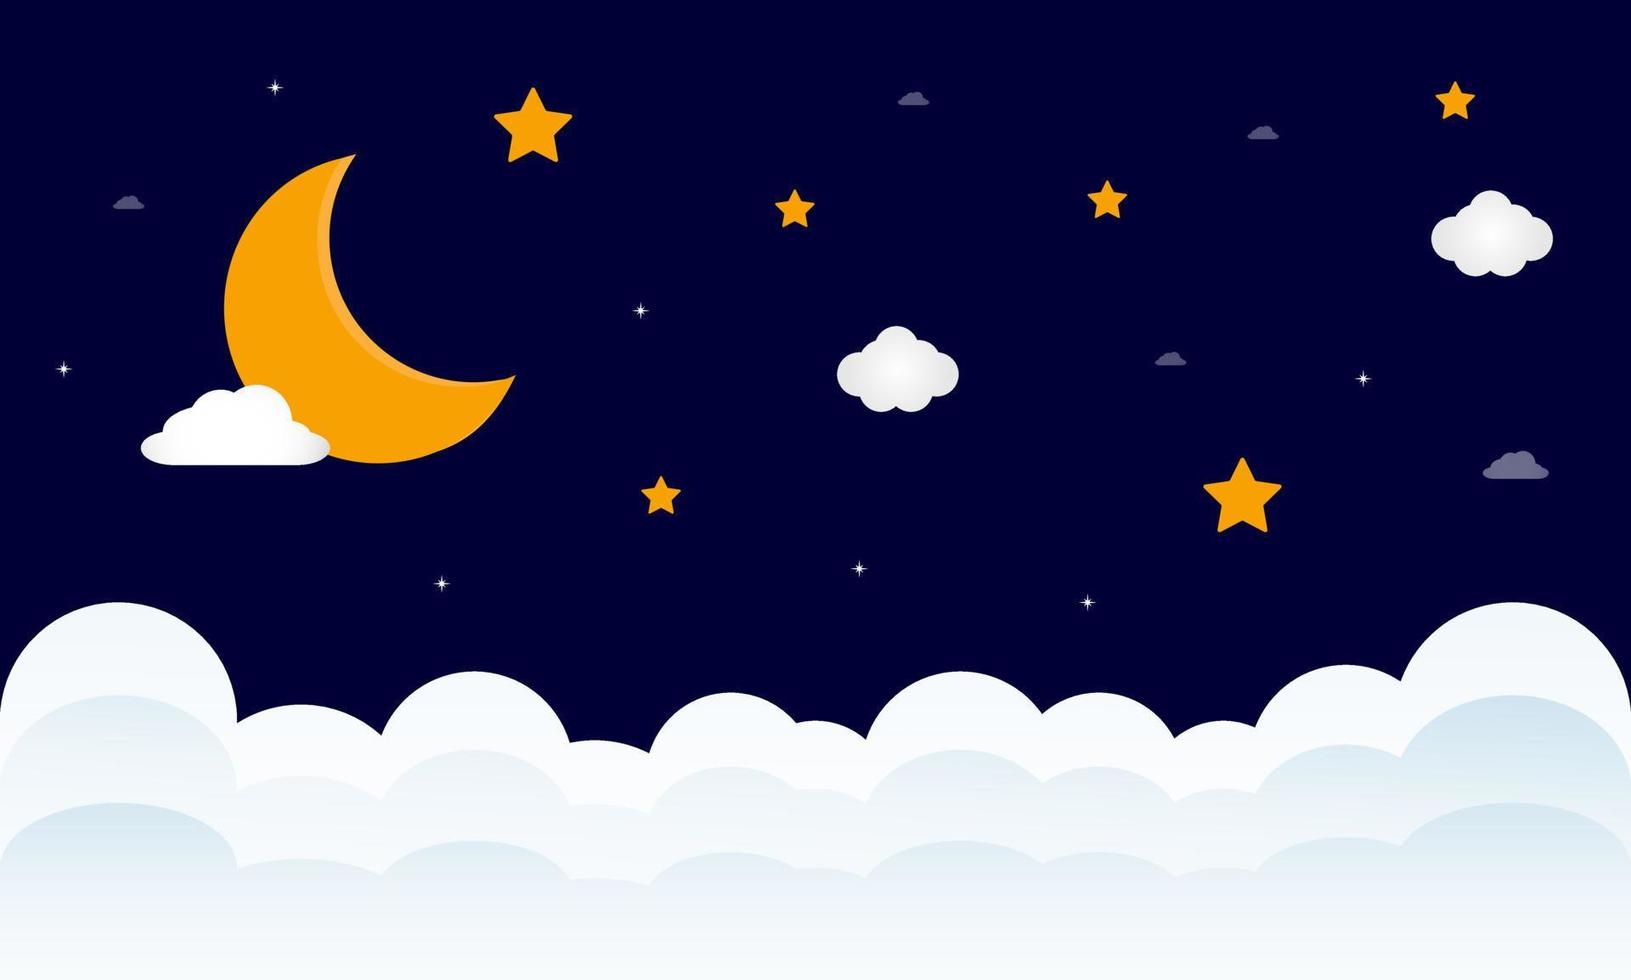 ljuv drömmar. halvmåne måne, moln och stjärnor på natt bakgrund. vektor illustration.